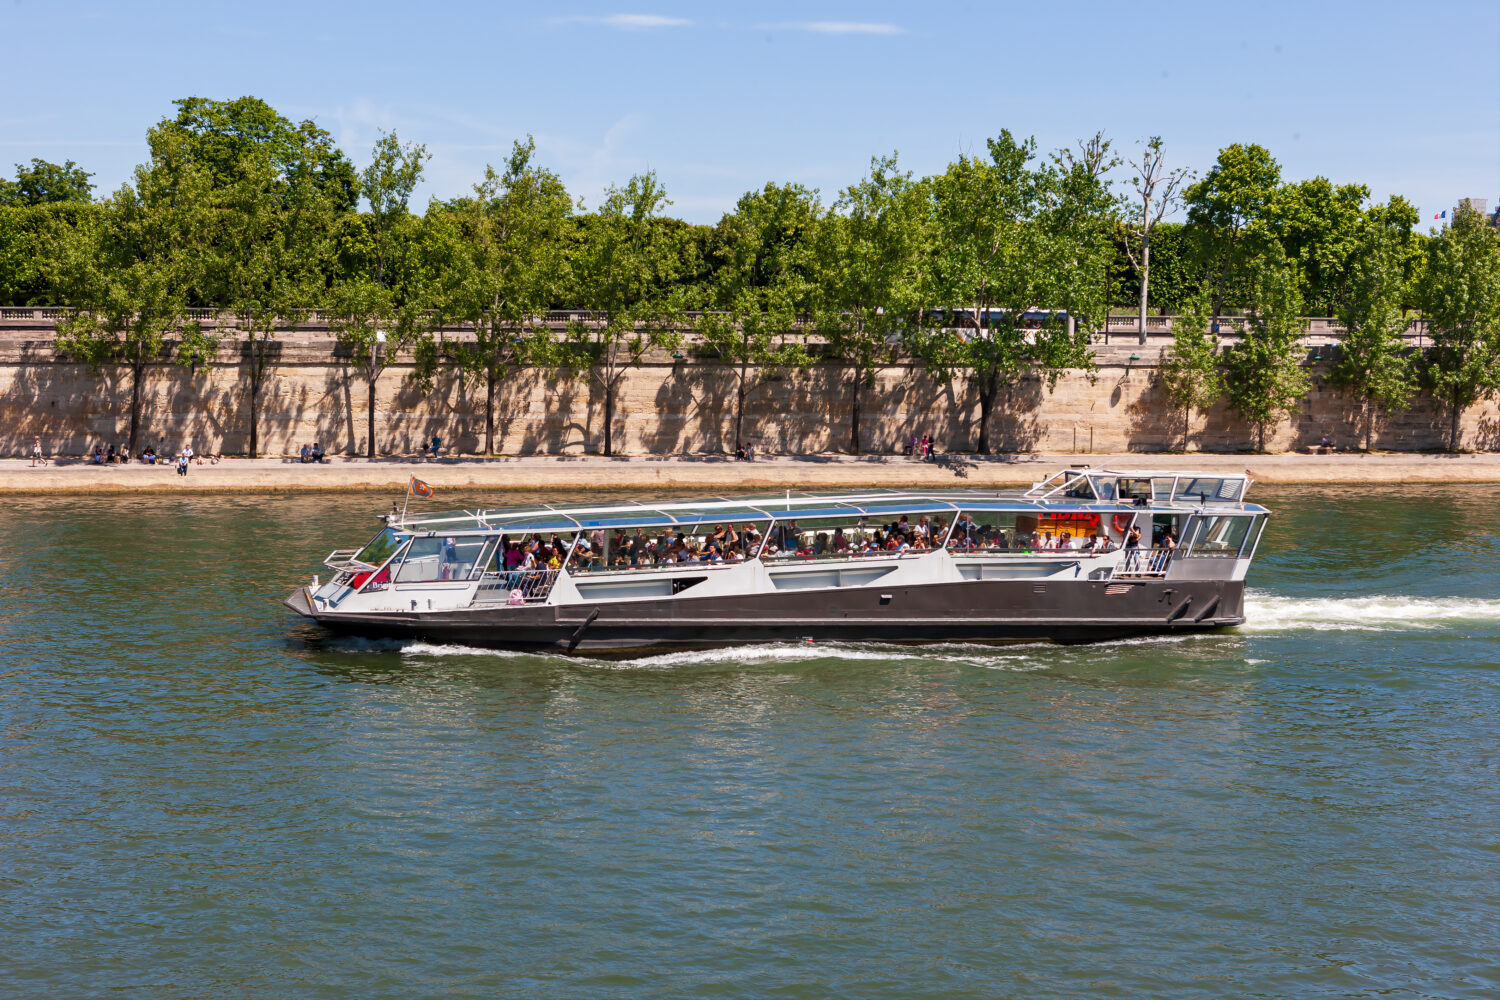 Una barca da diporto sulla Senna.  Parigi, Francia